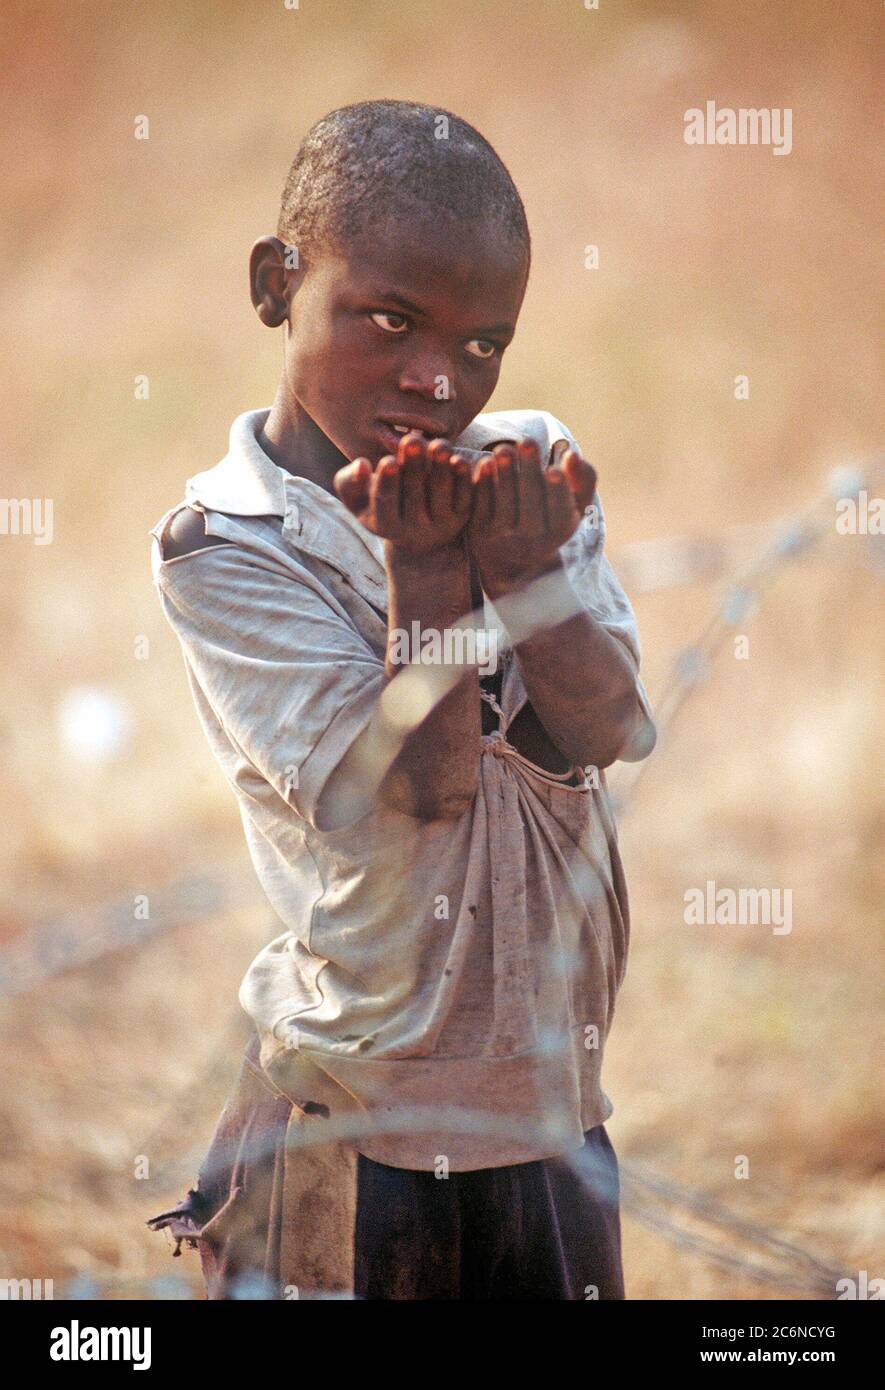 1994 Zaire - un piccolo rifugiato rwandese mendica per il cibo dal personale delle Nazioni Unite a Kibumba Refugee Camp. Egli è uno dei 1,2 milioni di rifugiati ruandesi sono fuggiti in Zaire dopo una guerra civile scoppiata nel loro paese. Foto Stock